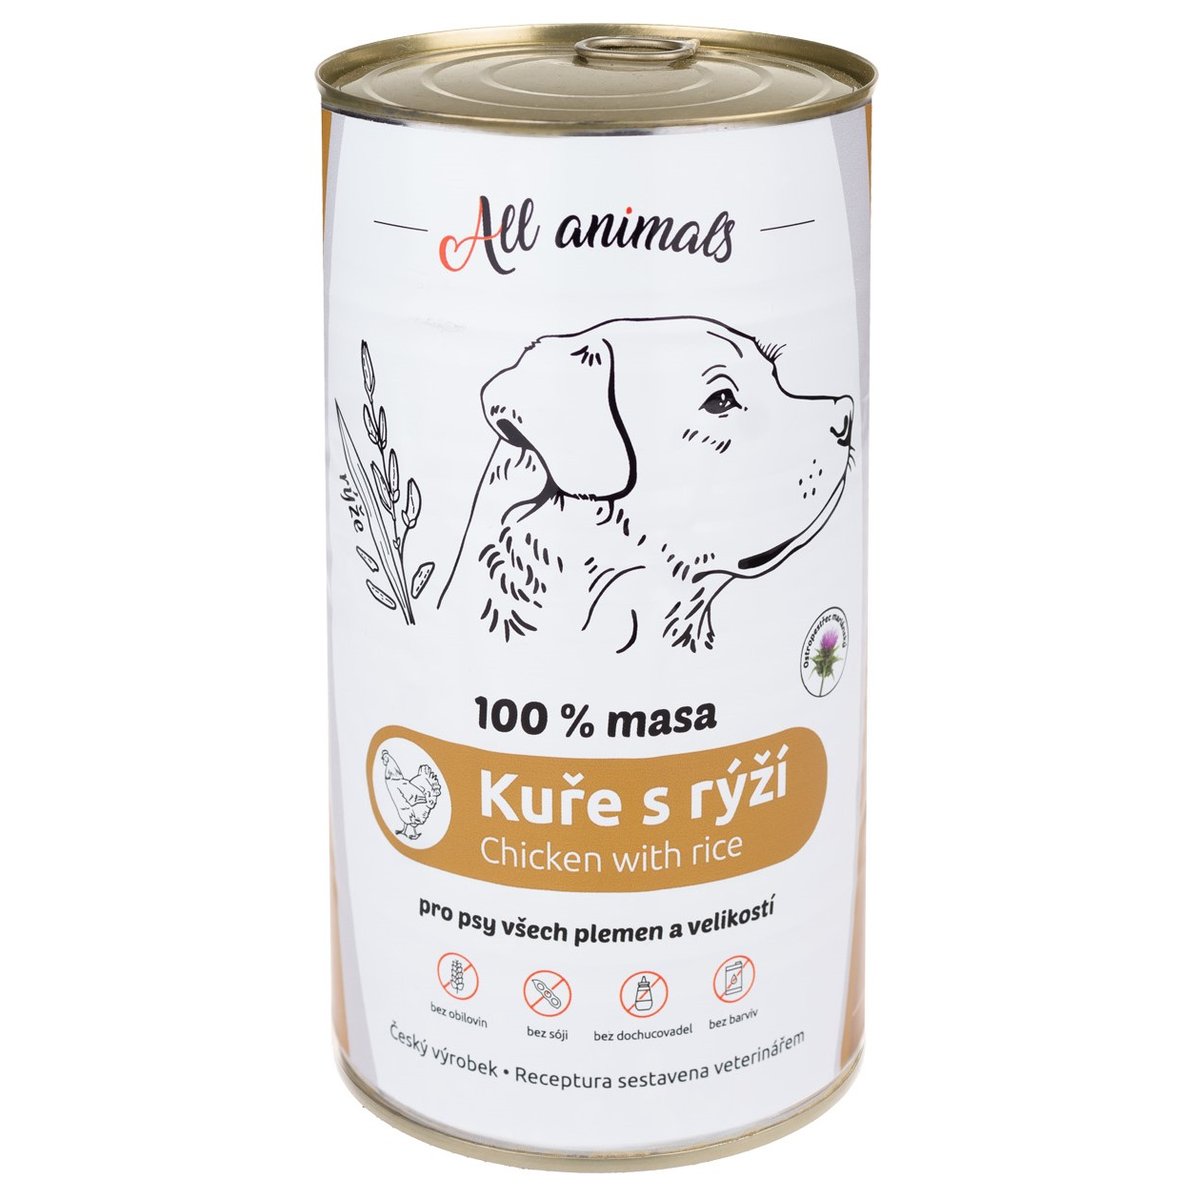 All Animals Kuřecí mleté maso s rýží konzerva pro psy